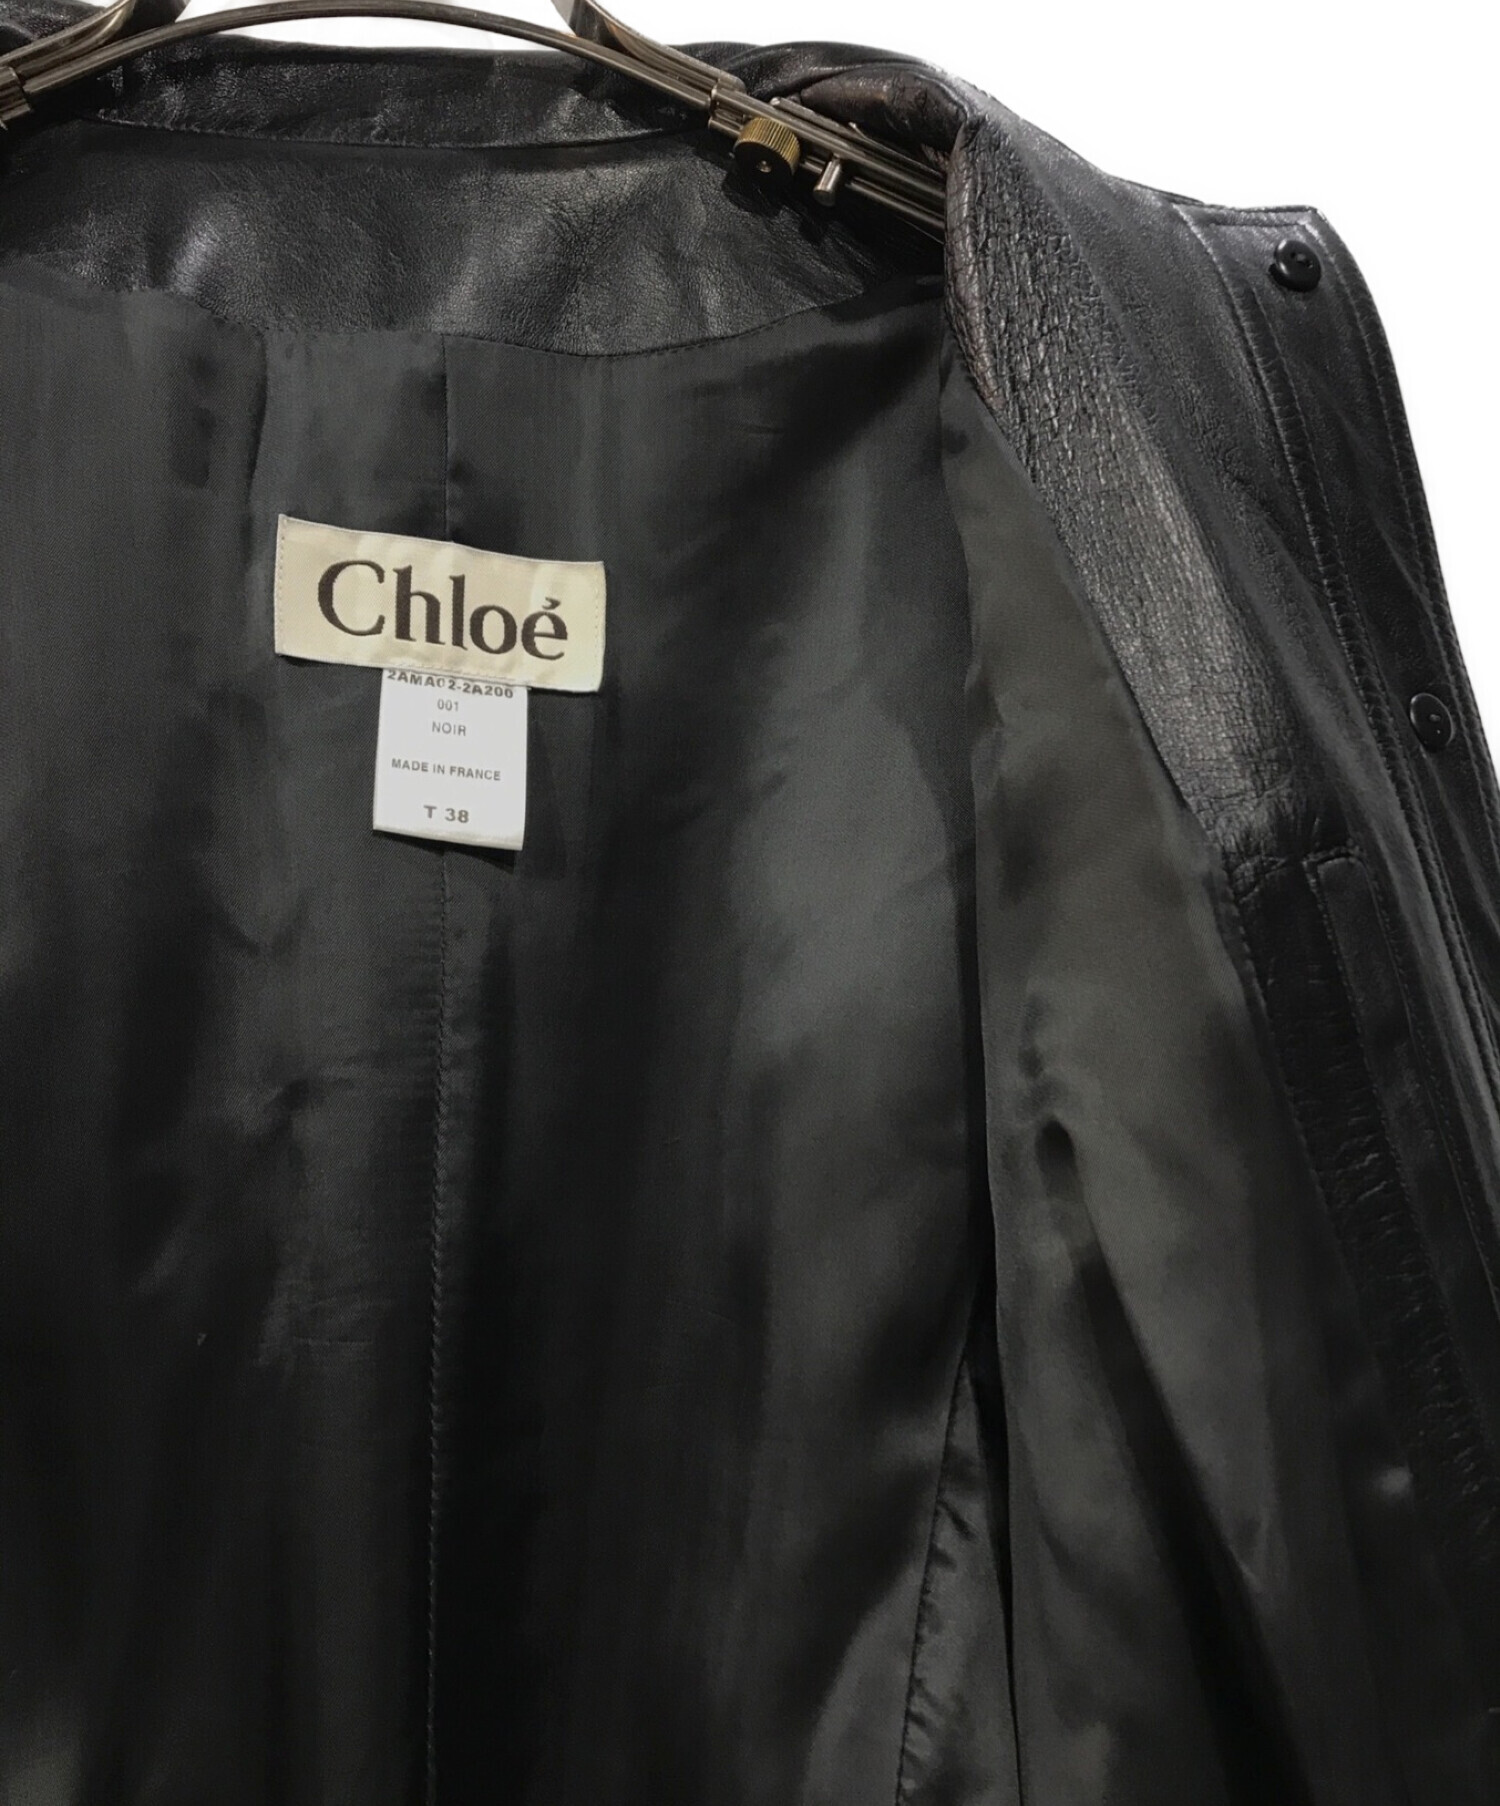 Chloe (クロエ) レザートレンチコート ブラック サイズ:38